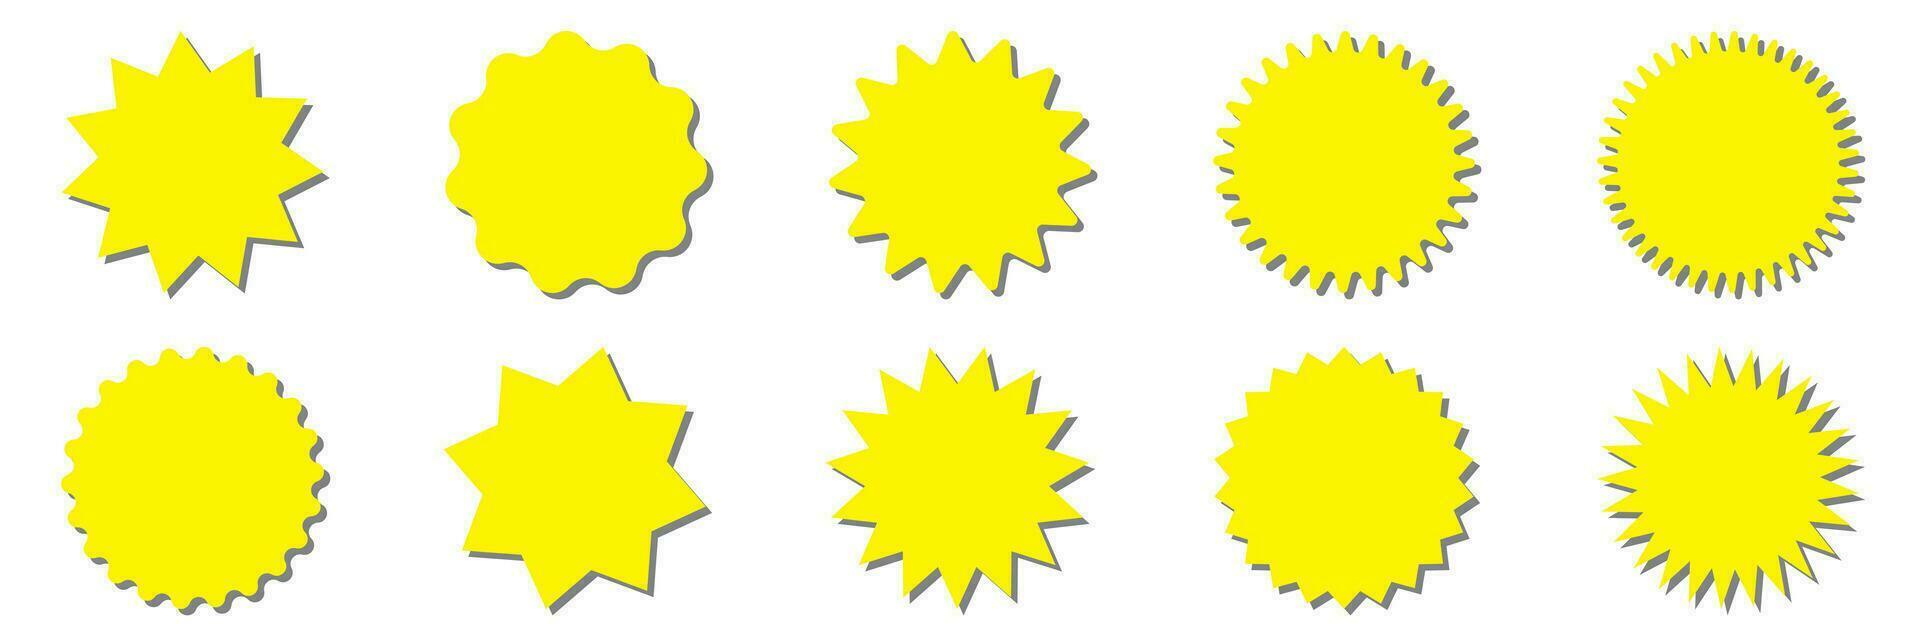 starburst giallo etichetta impostato - collezione di speciale offrire vendita il giro sagomato sunburst etichette e badge isolato su bianca sfondo. cerchio adesivi o pulsanti nel modulo di stella per promo pubblicità. vettore